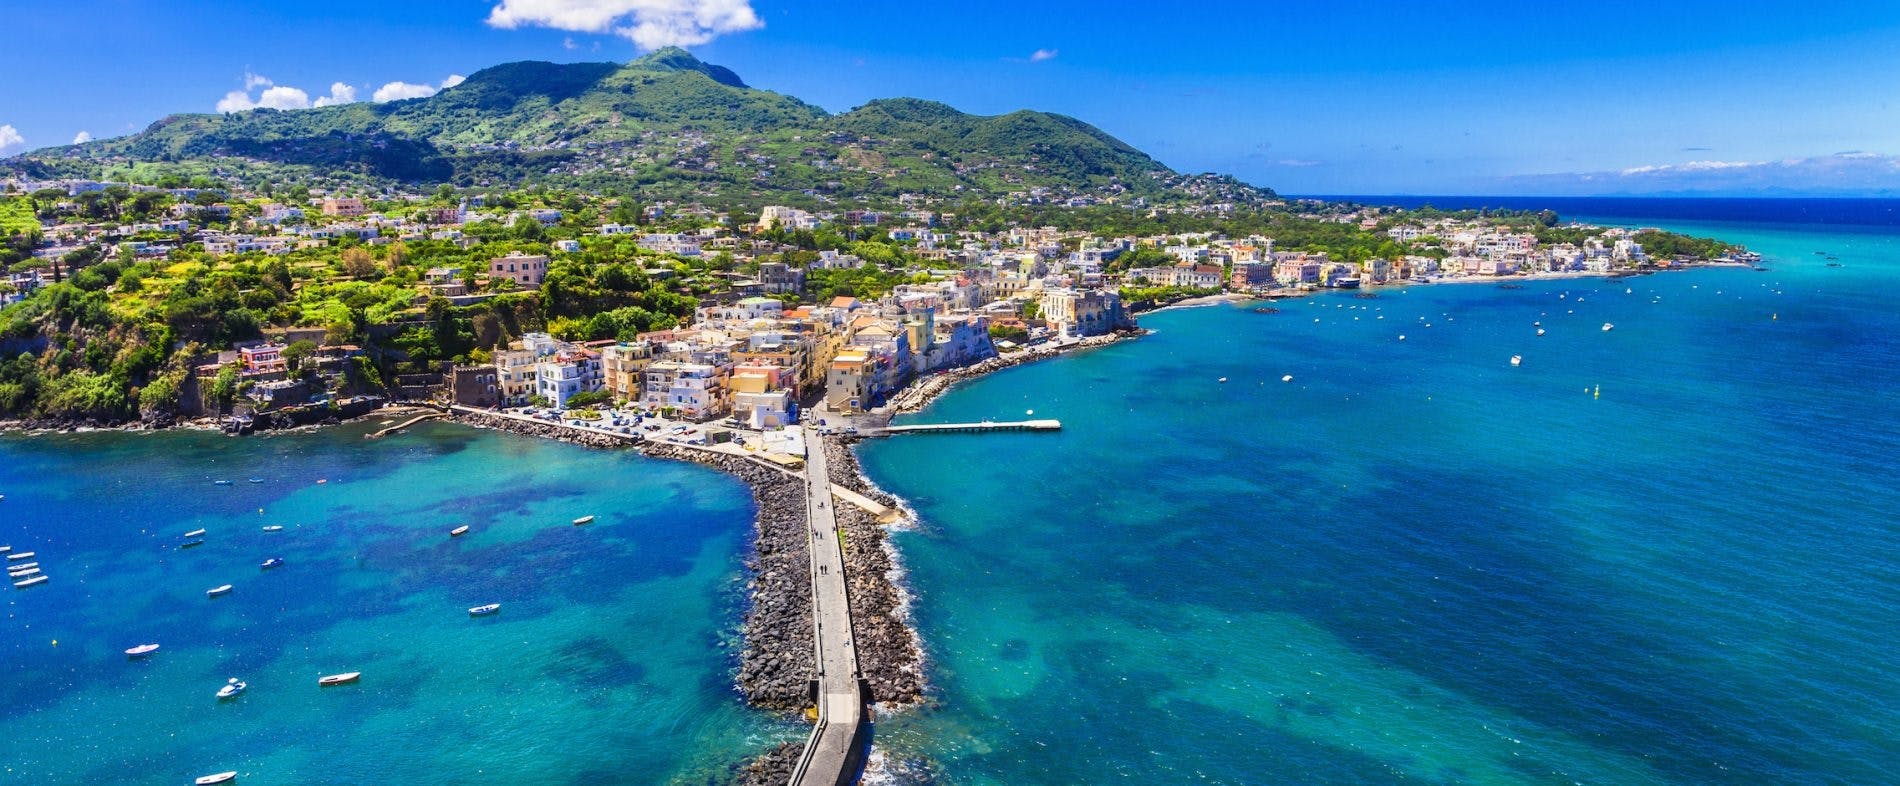 Bootstour nach Ischia und Procida ab Neapel